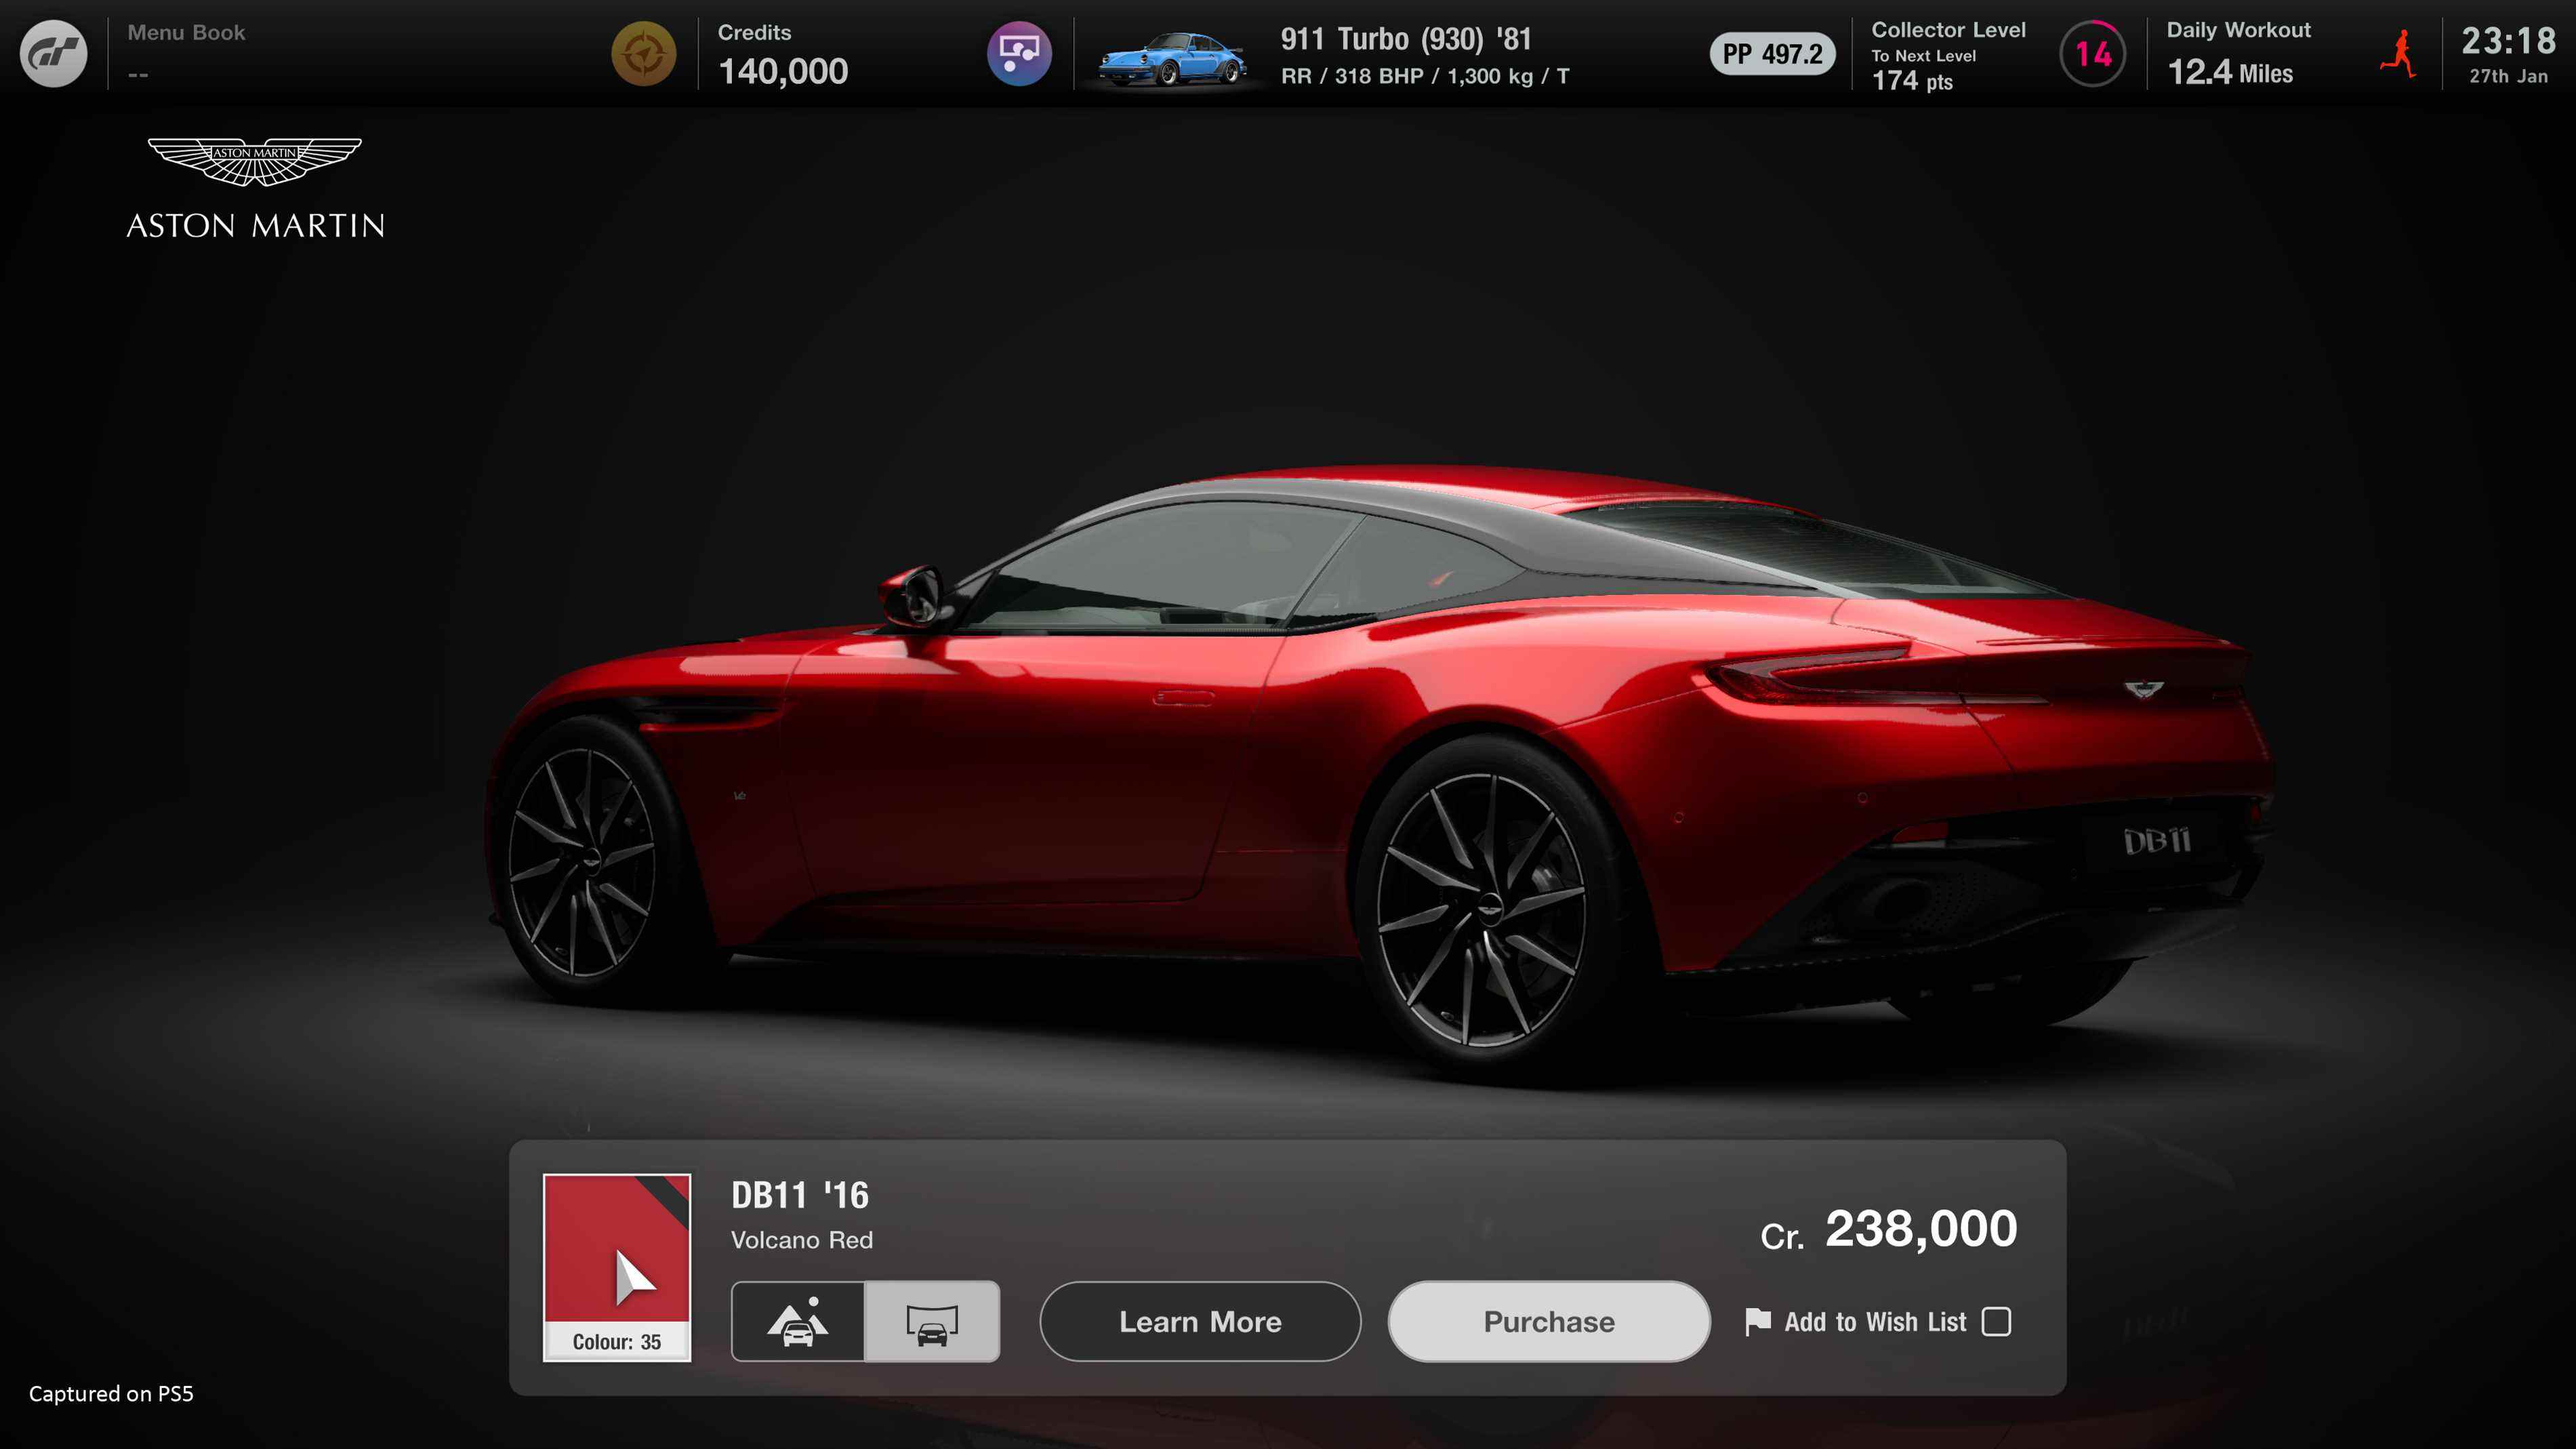 Capture d'écran de l'offre Gran Turismo 7 Brand Central